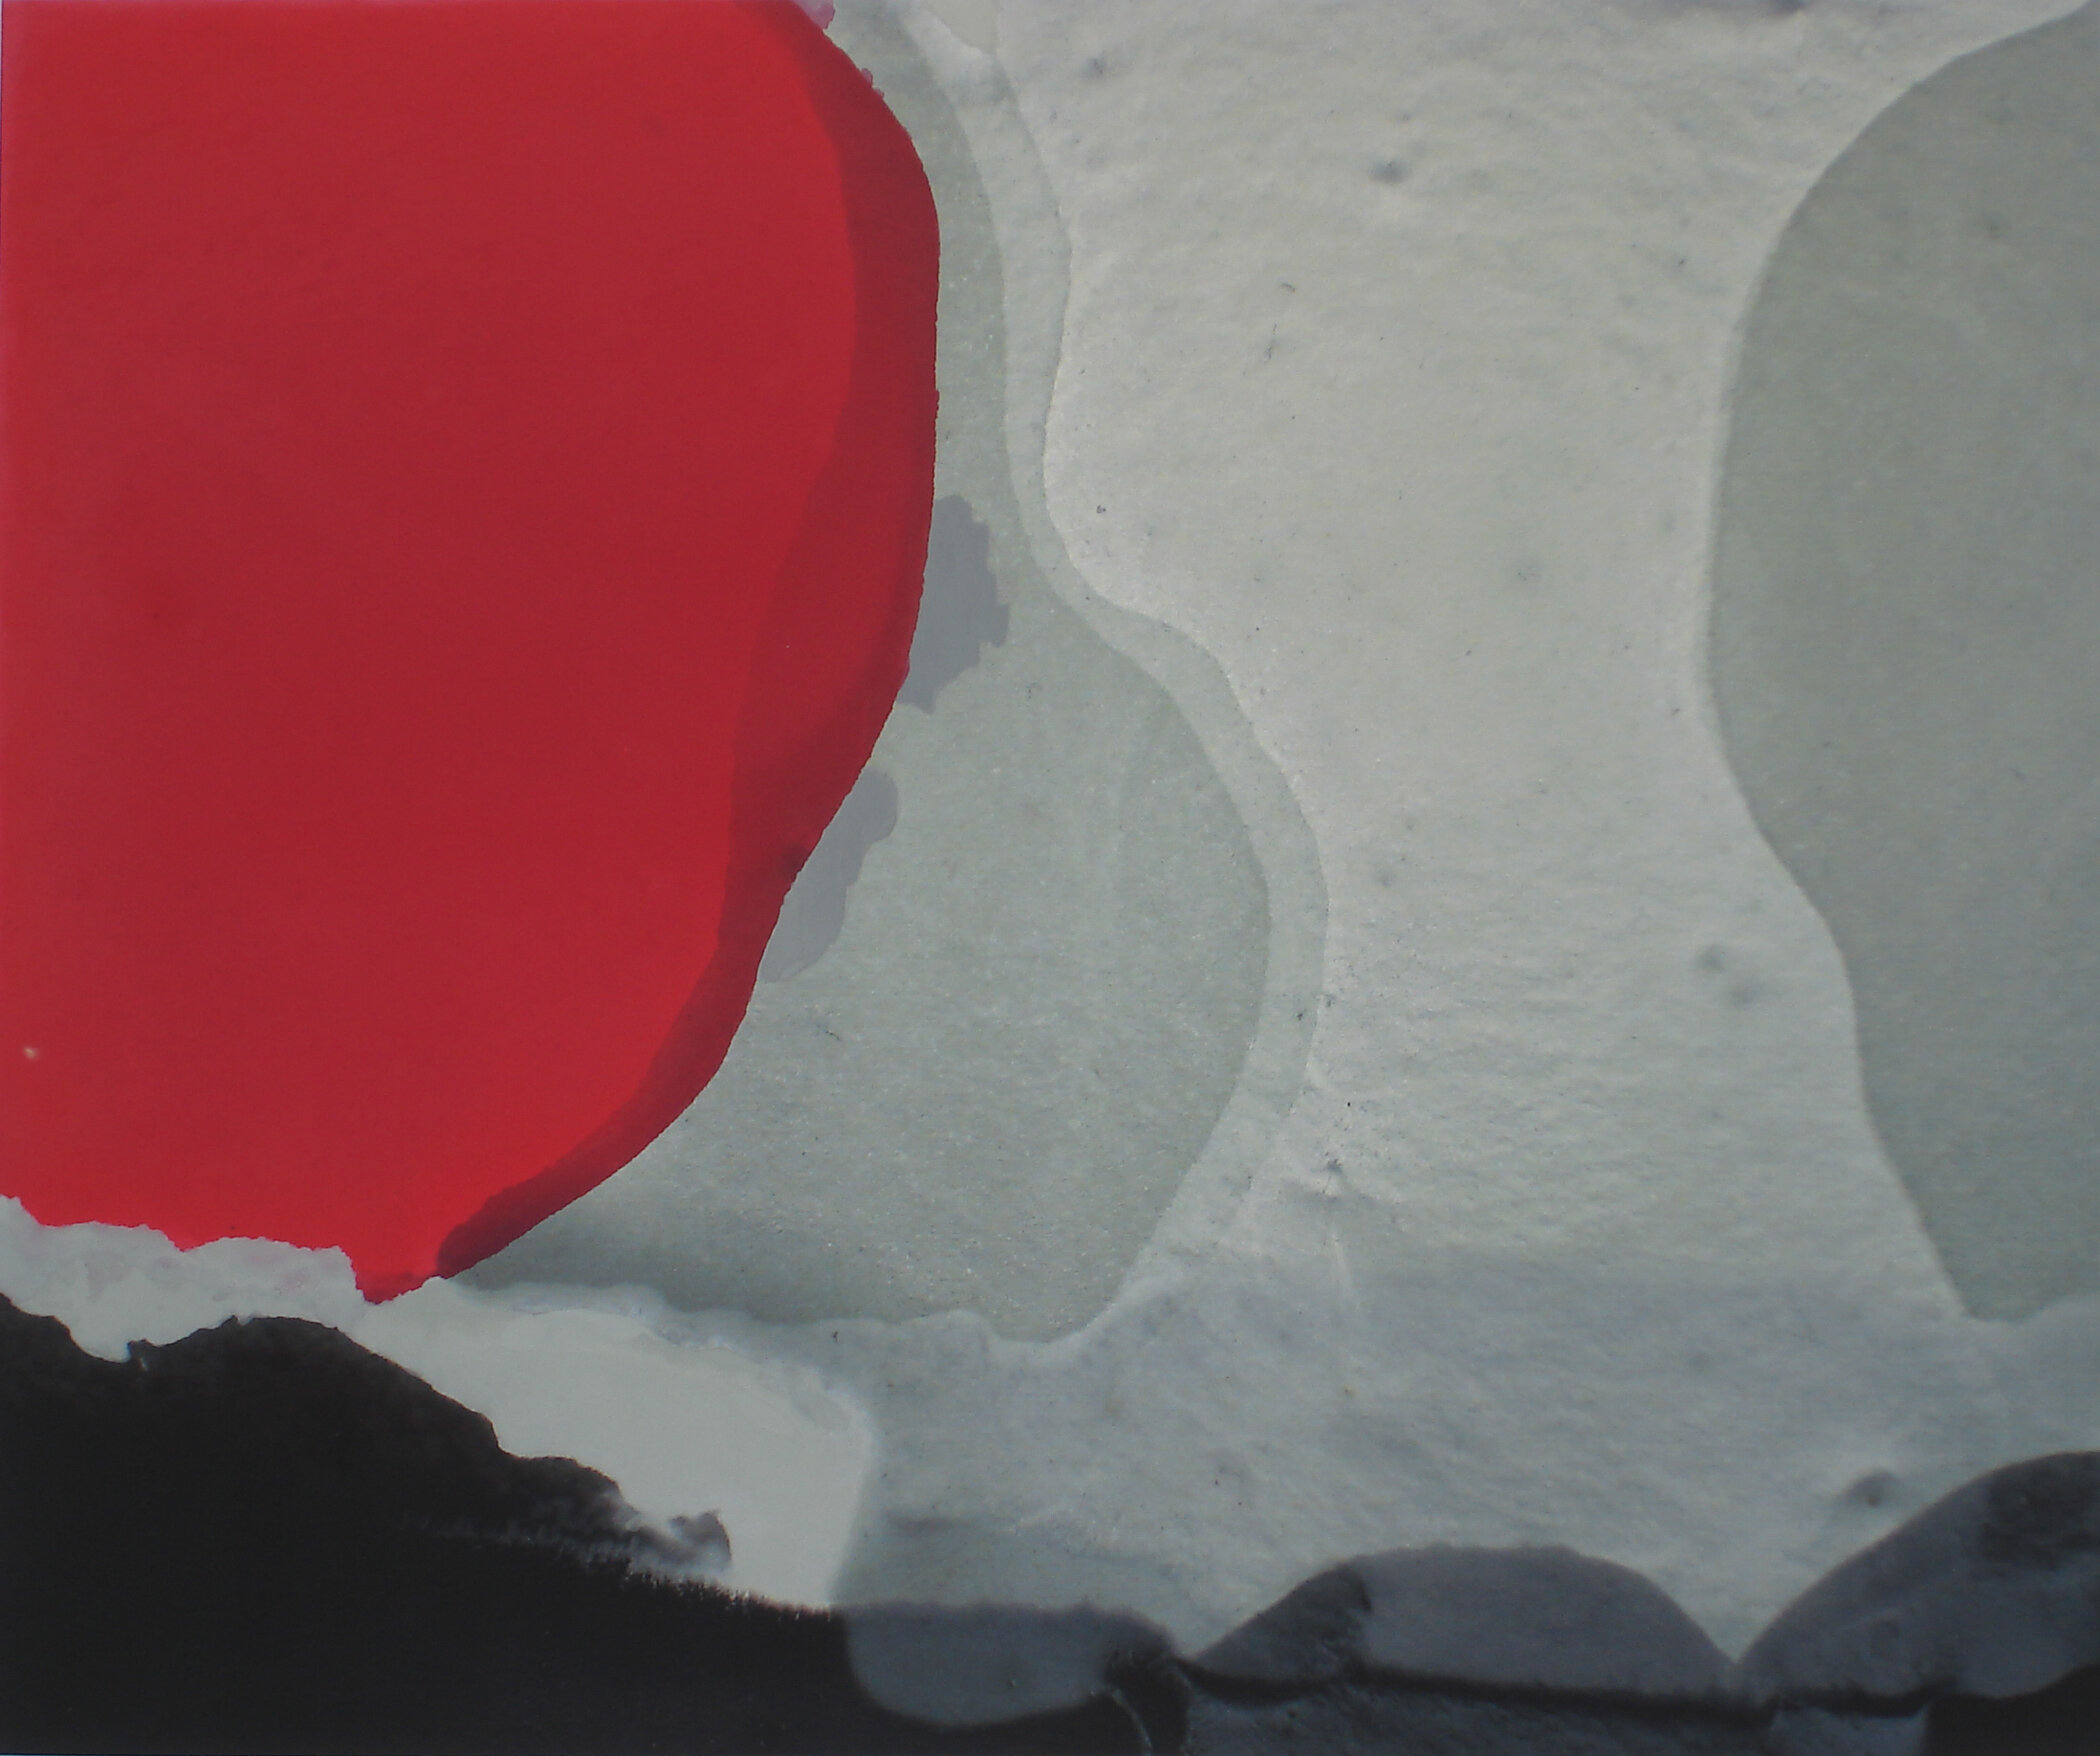   Red Pool , oil on inkjet print on aluminium, 51cm x 61cm, 2006 